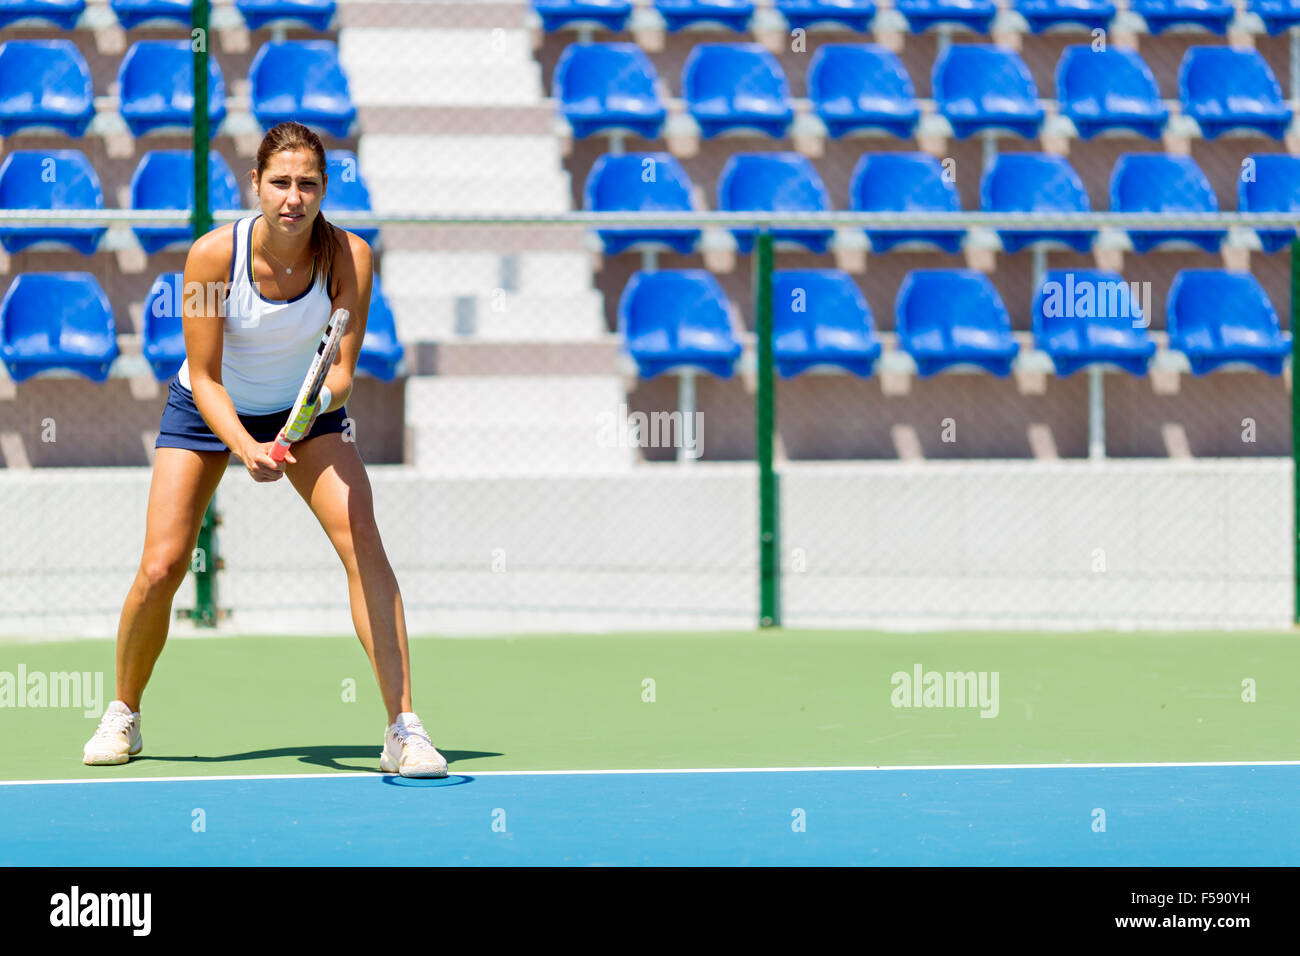 Femmina giocatore di tennis in ricezione di un atteggiamento di servizio Foto Stock